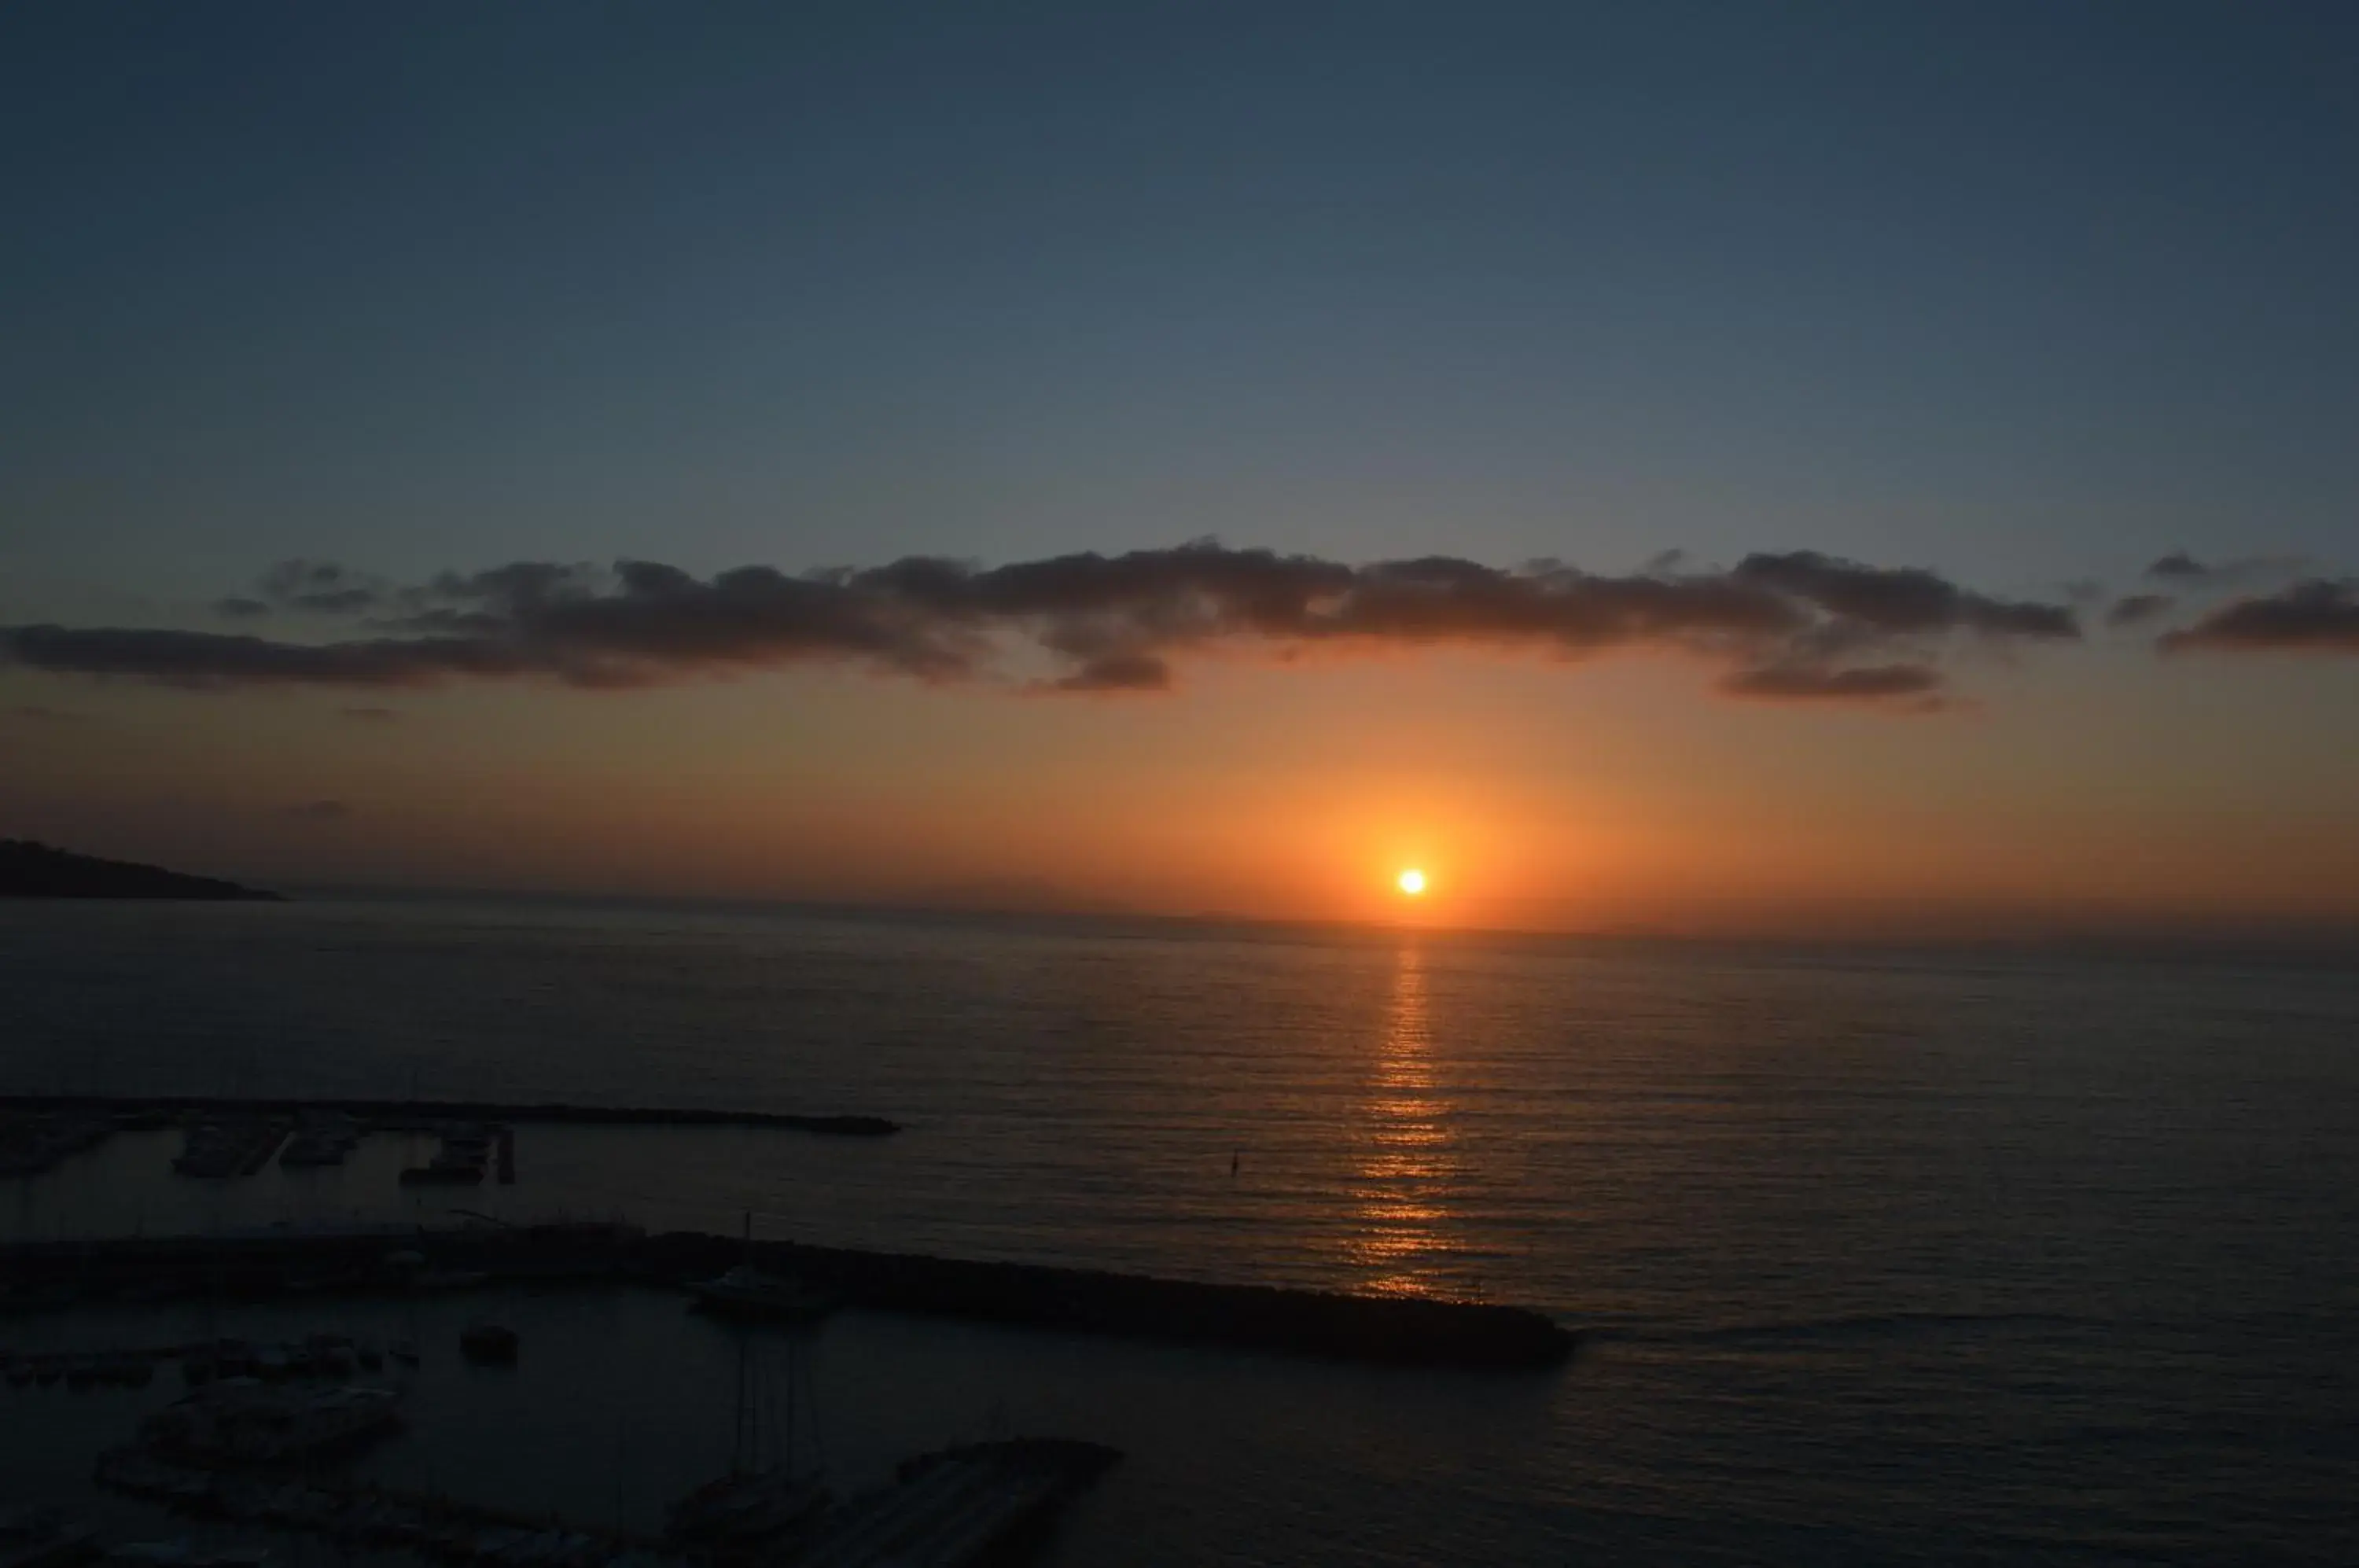 Sea view, Sunrise/Sunset in Hotel La Ripetta